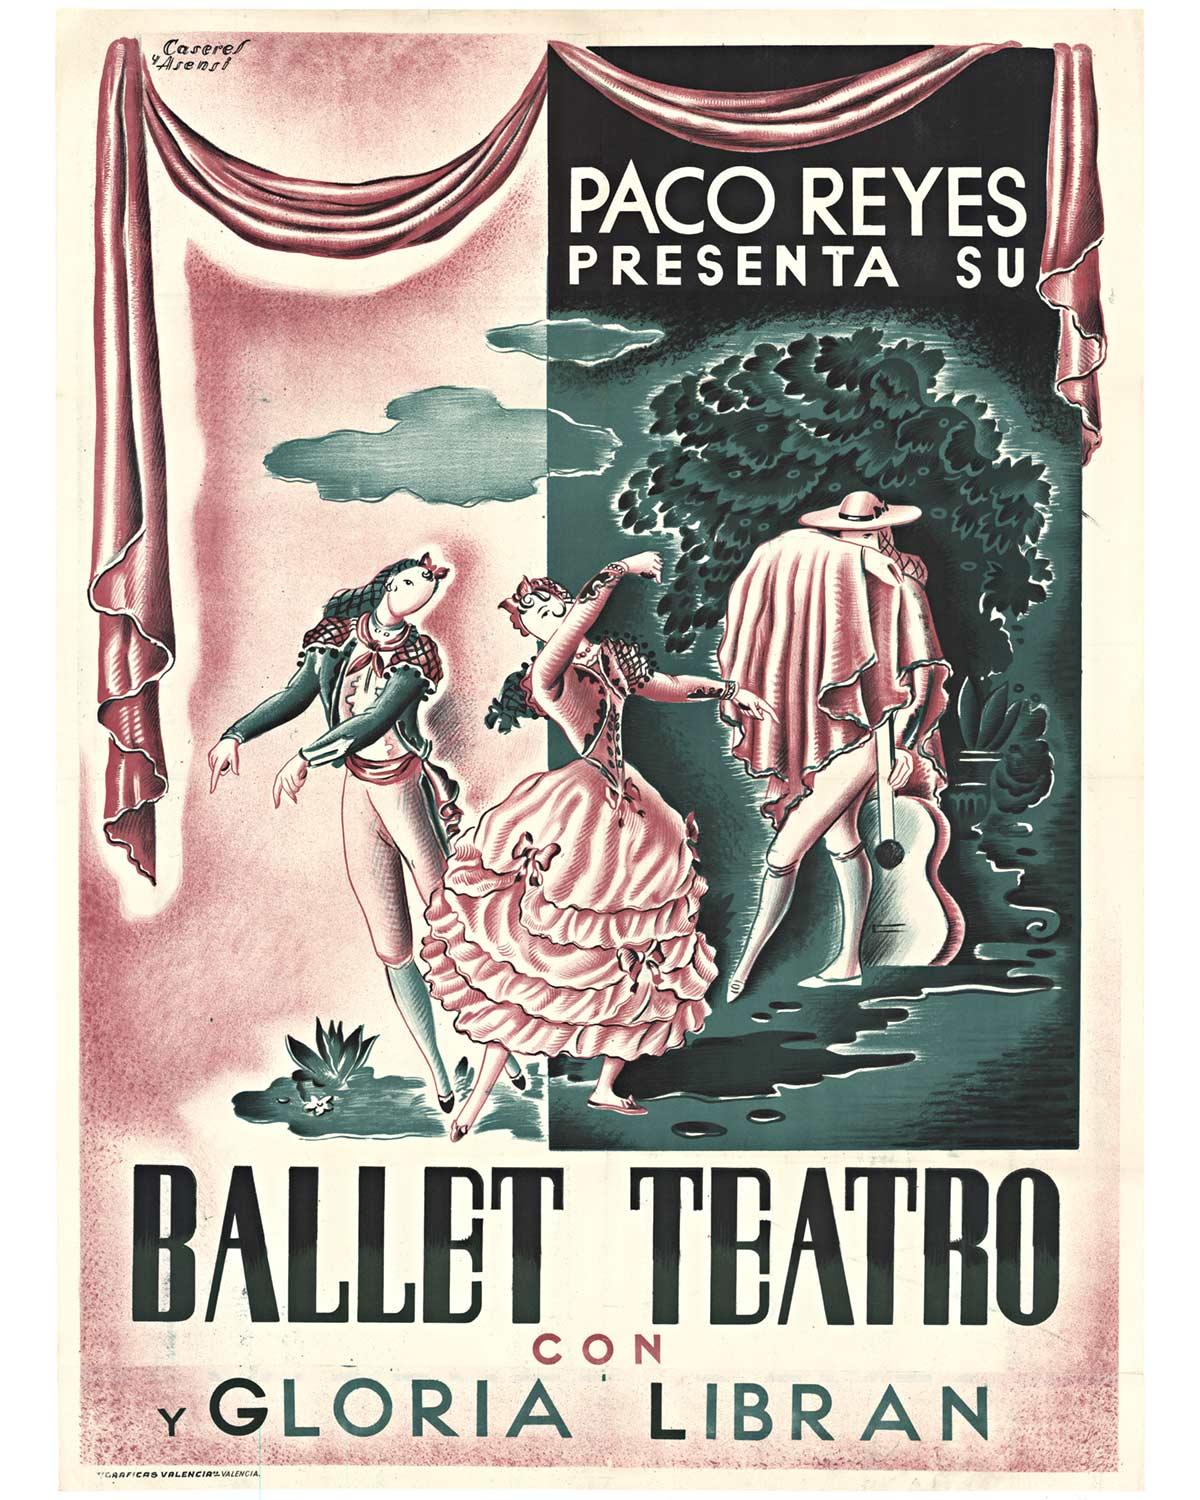 Original Paco Reyes Presenta Su Ballet Teatro con y Gloria Libran, Vintage-Poster